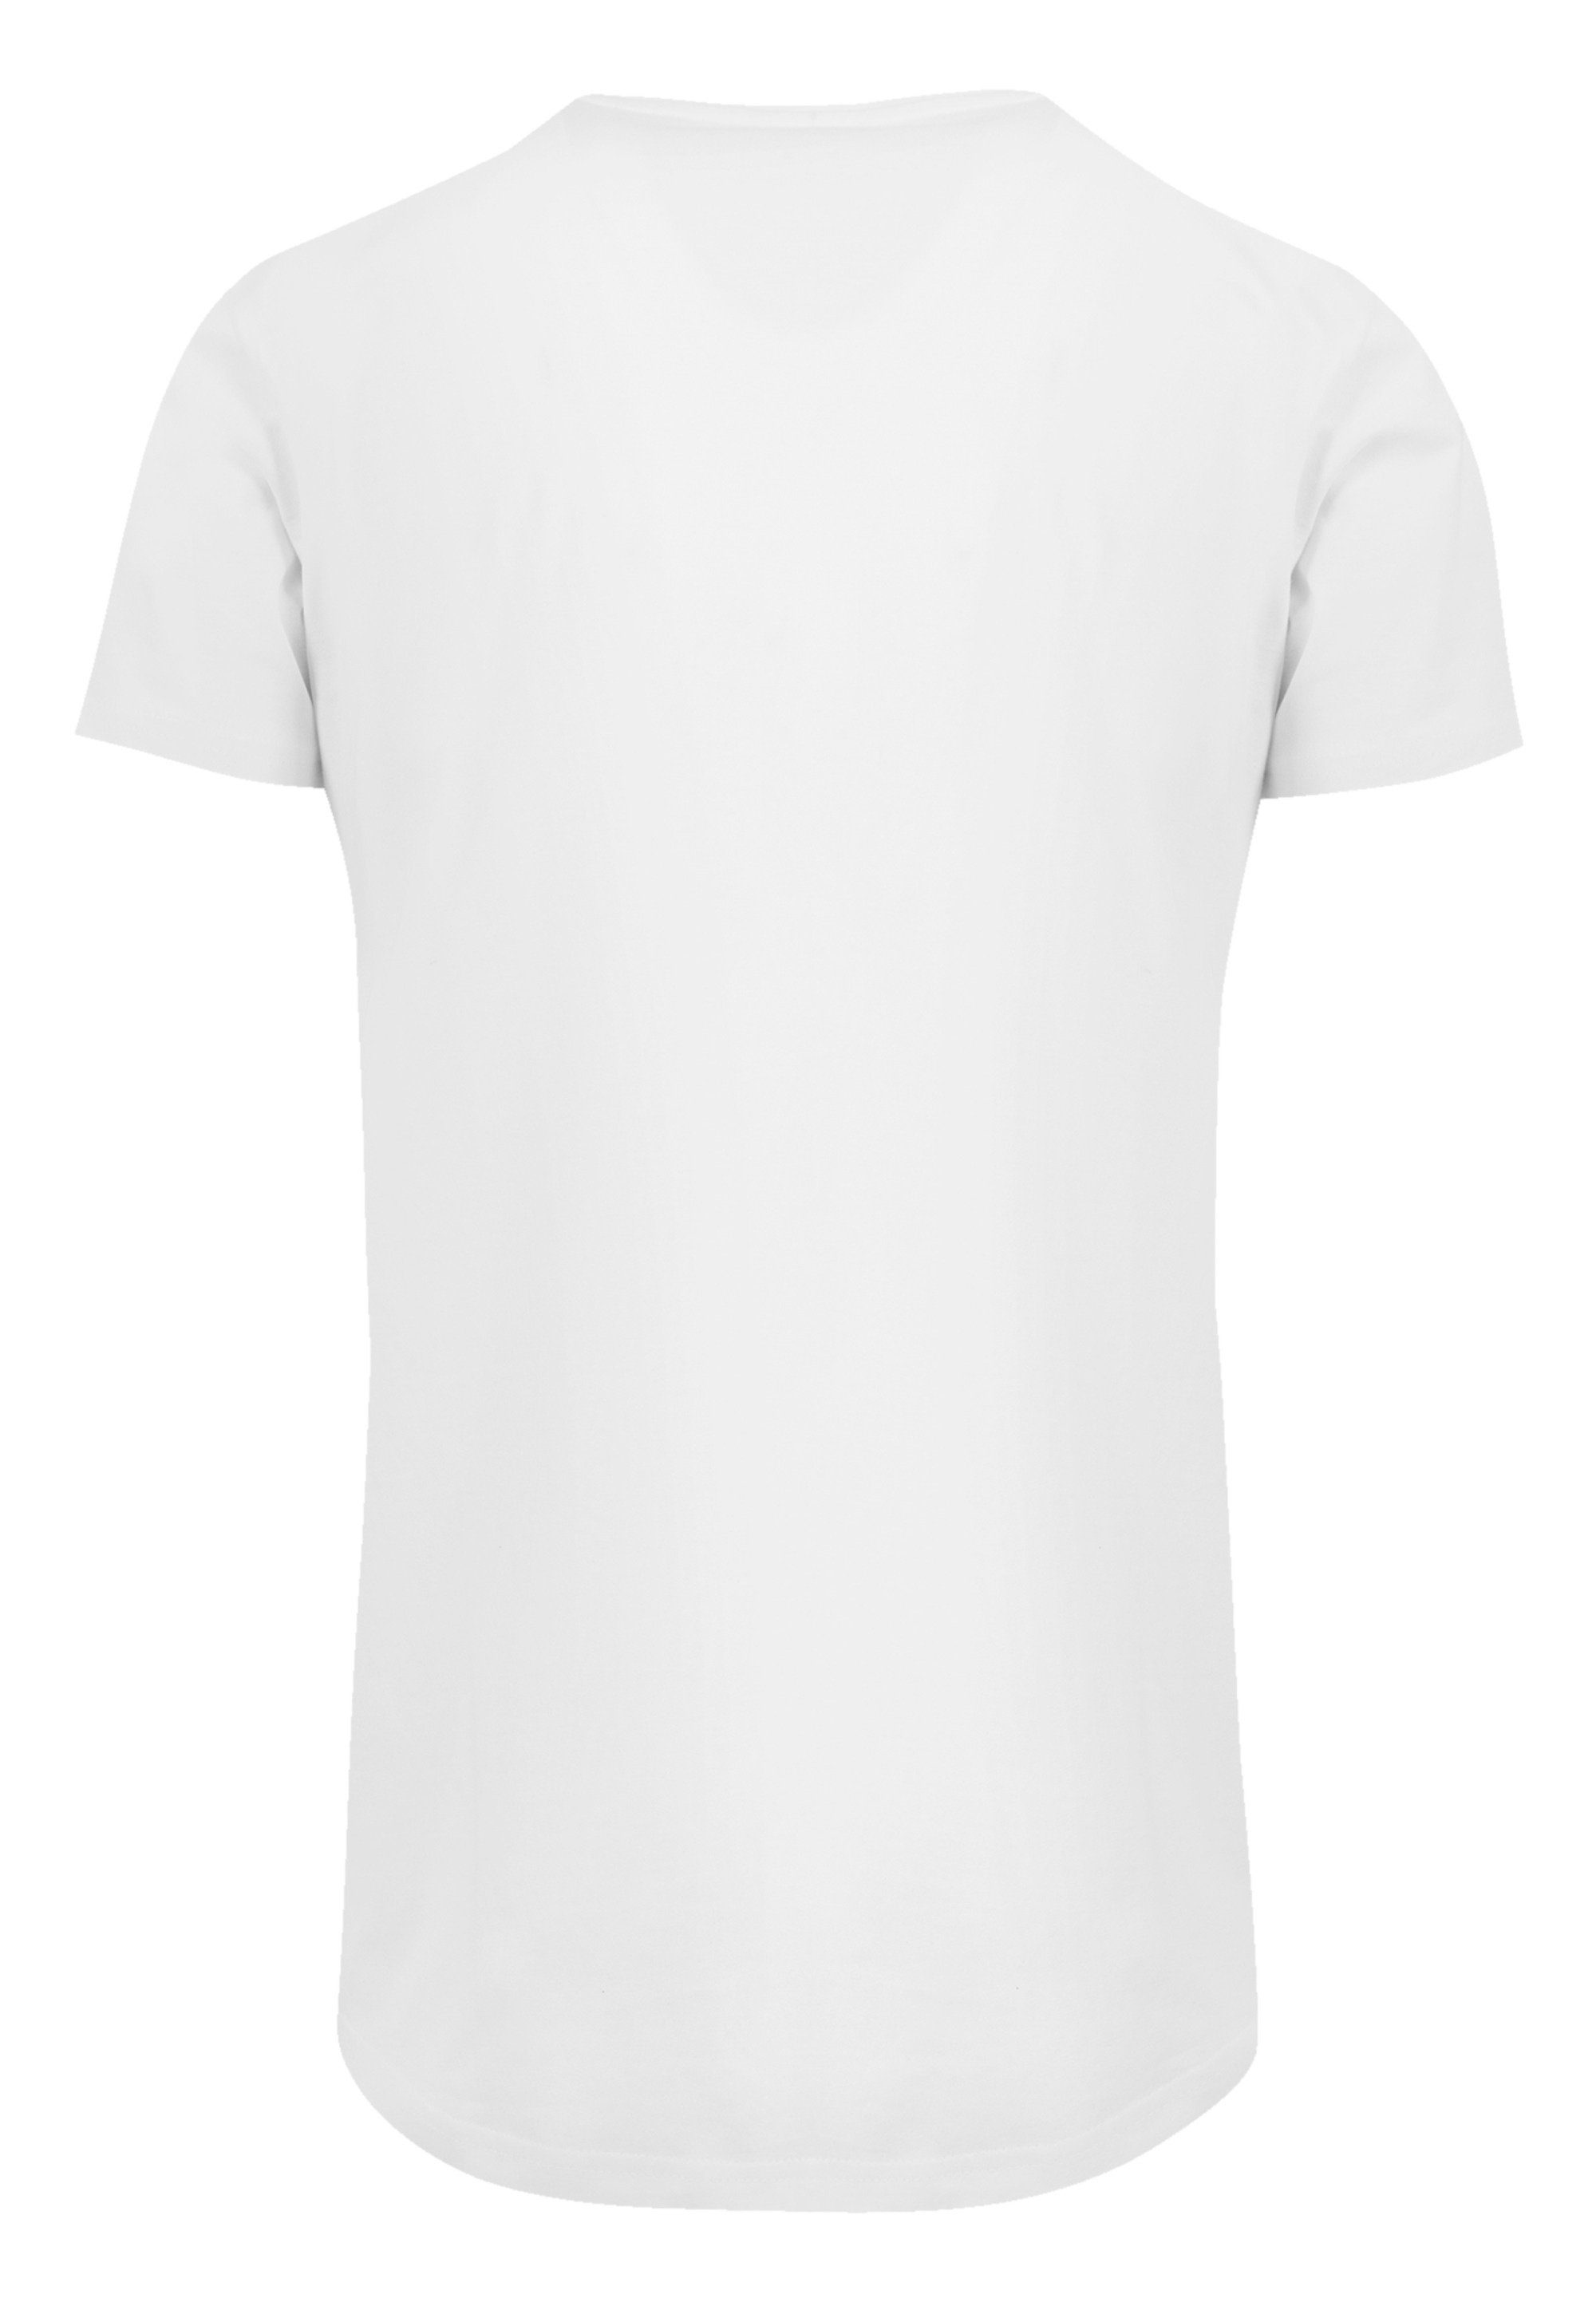 weiß Pastel SIZE T-Shirt Janis Joplin Print PLUS Logo F4NT4STIC